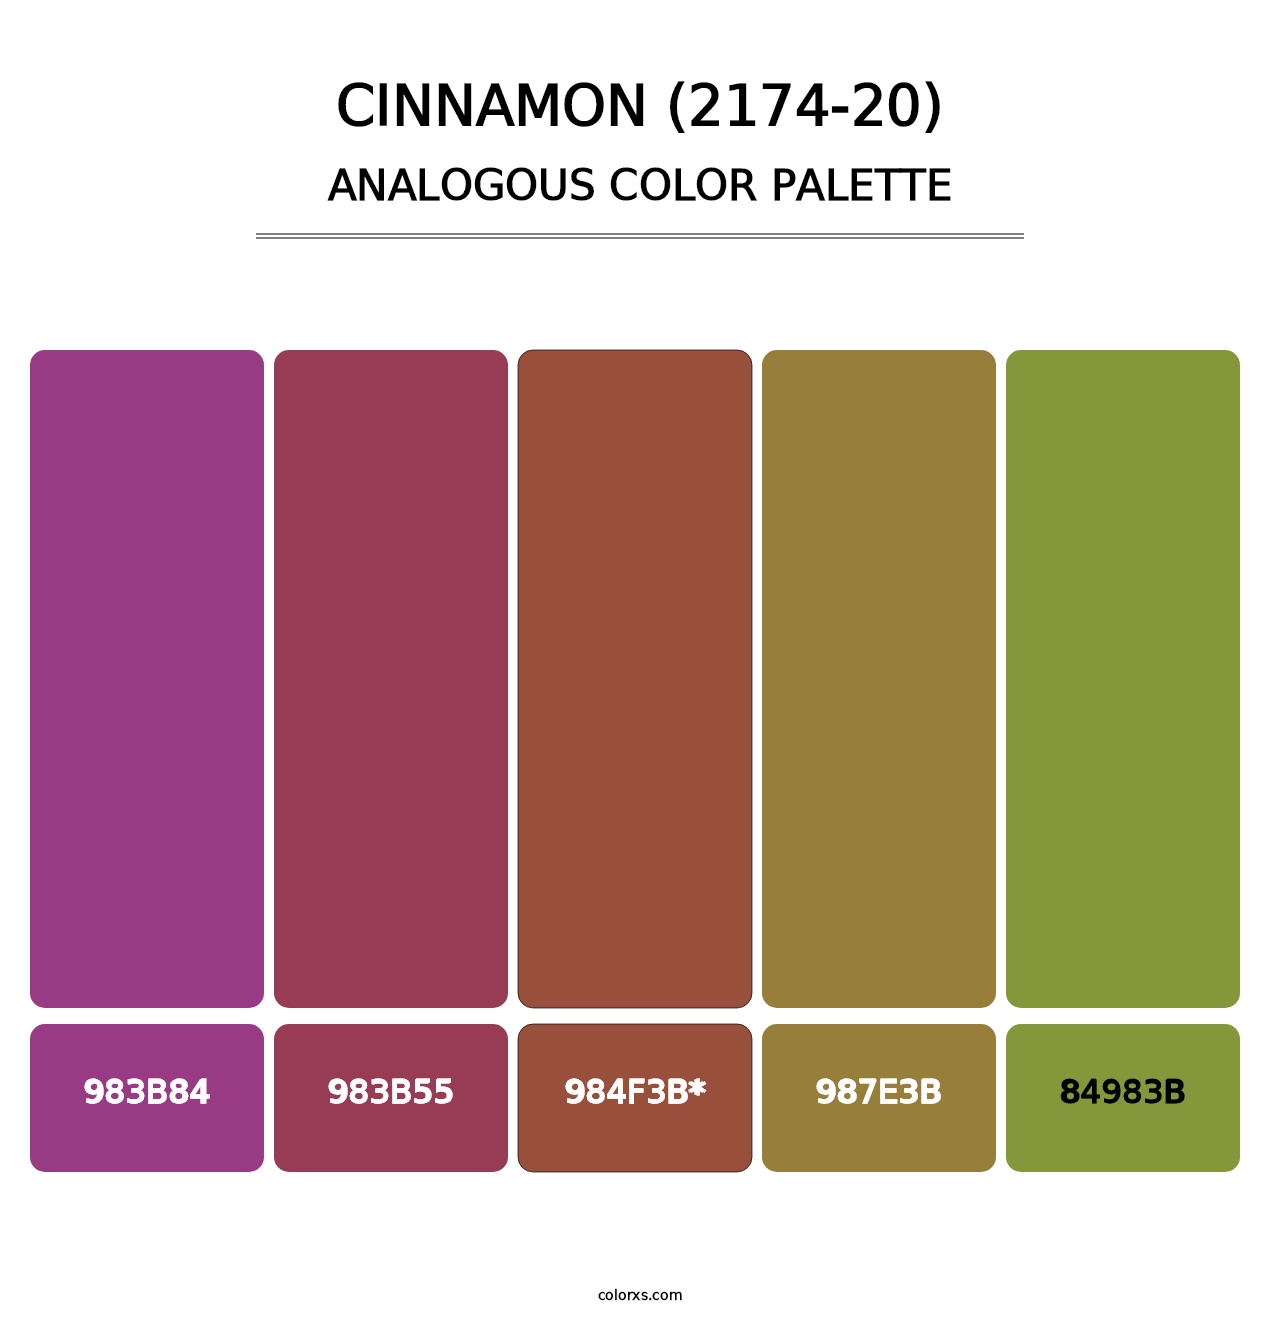 Cinnamon (2174-20) - Analogous Color Palette